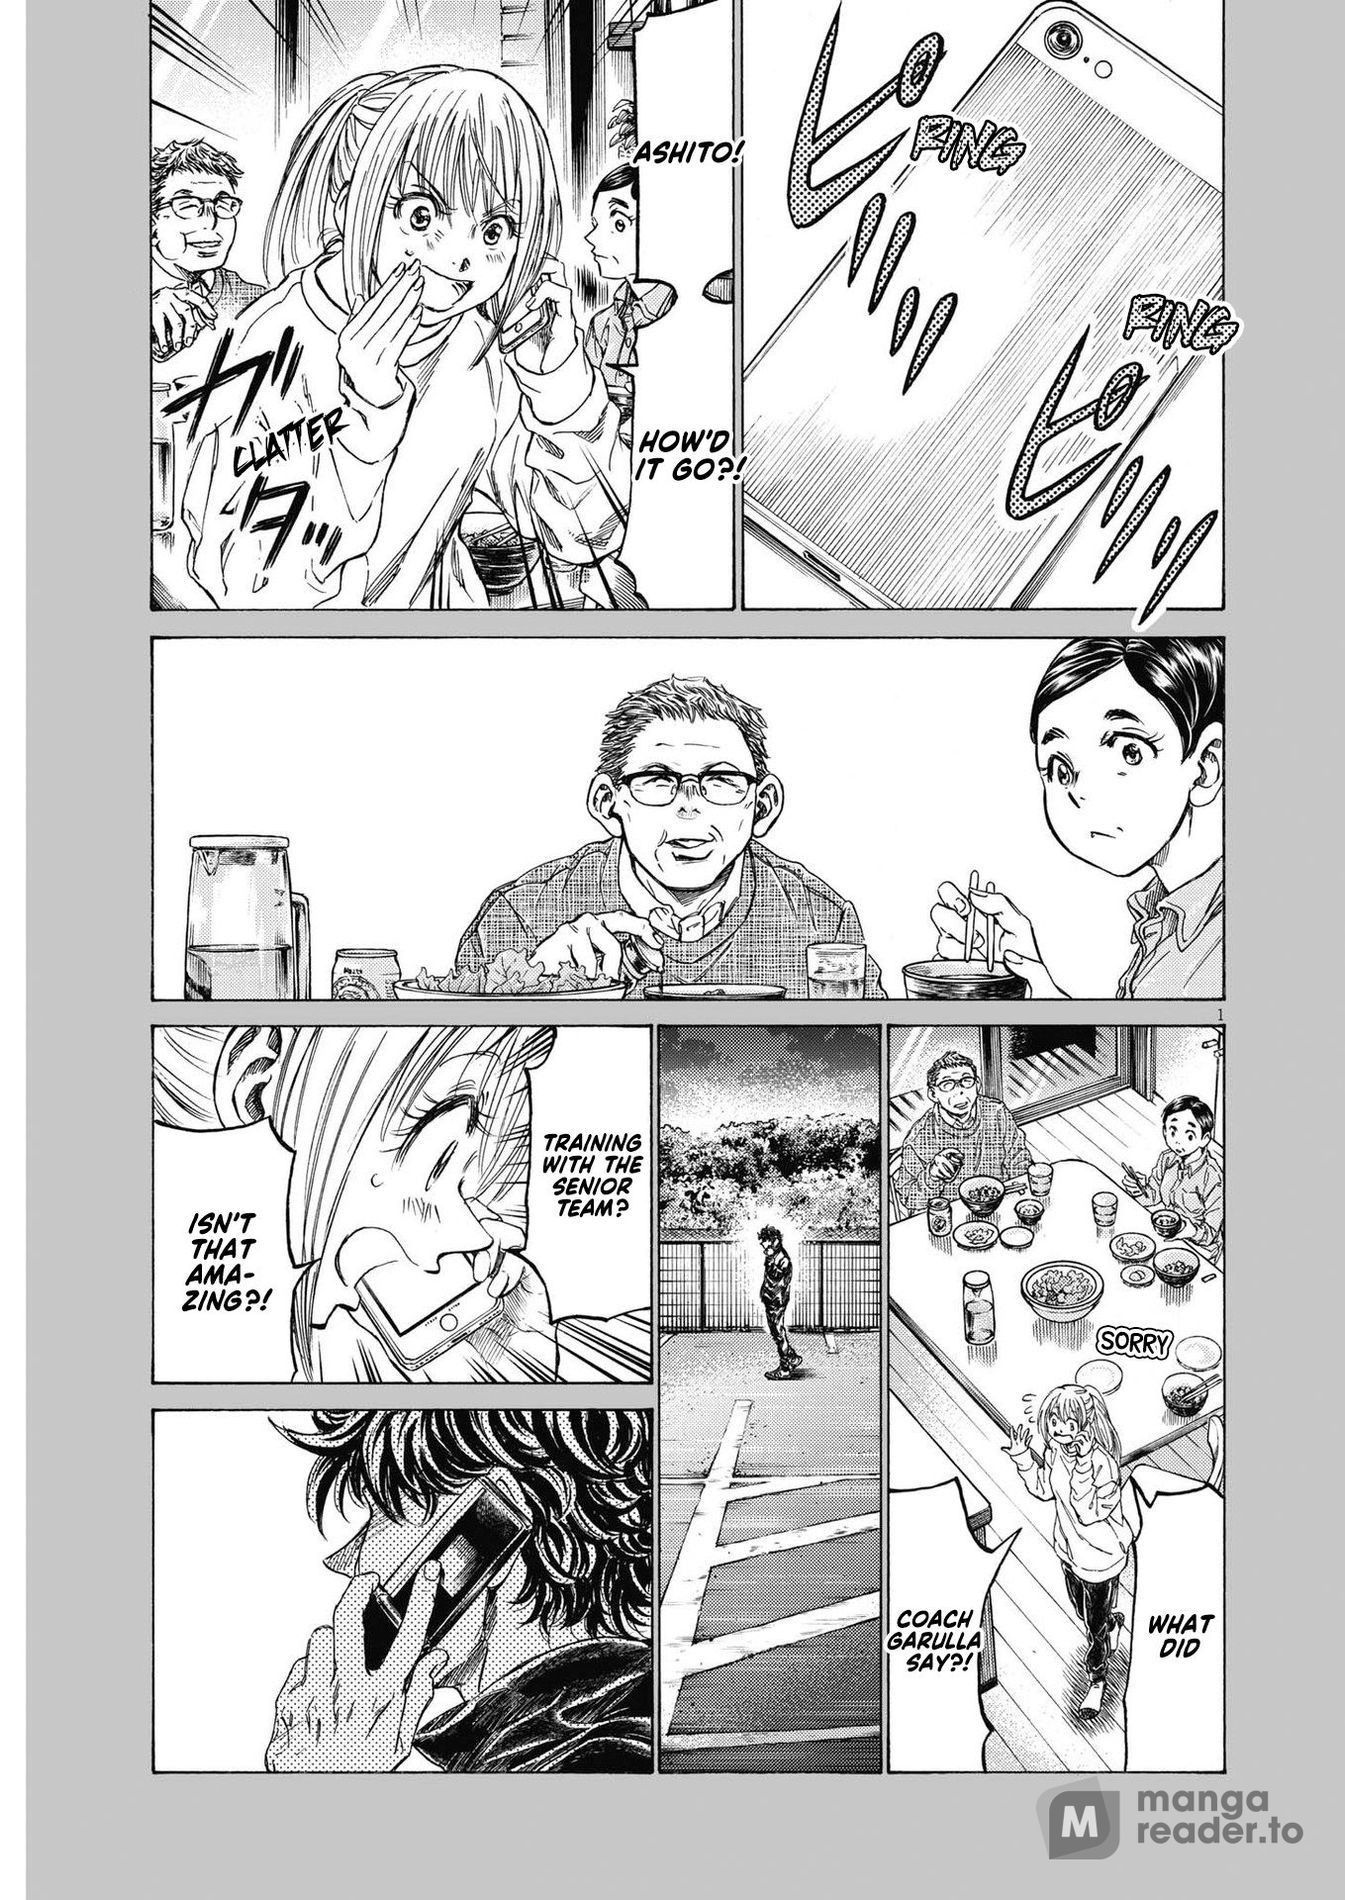 Ao Ashi Manga Panel